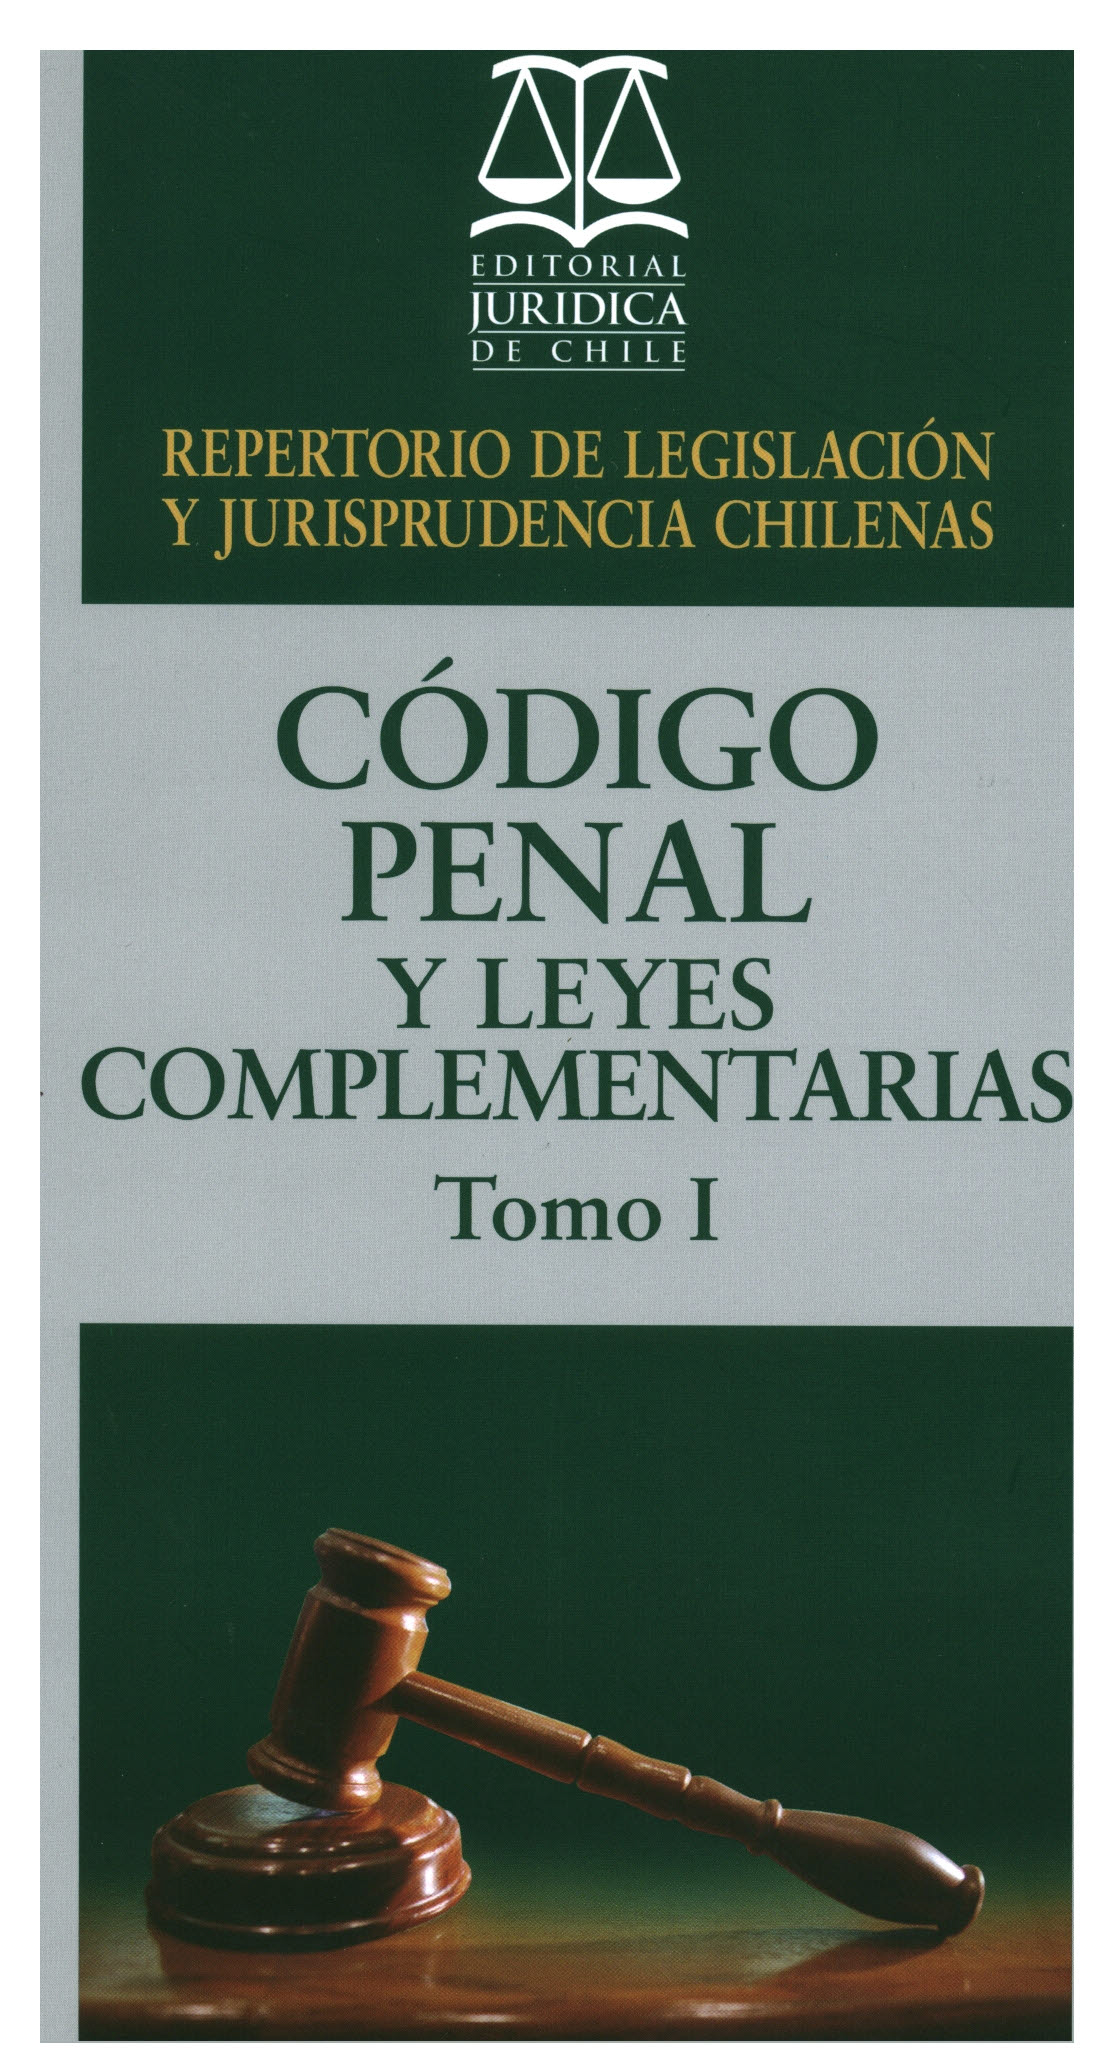 Repertorio de legislación y jurisprudencias chilenas. Código penal